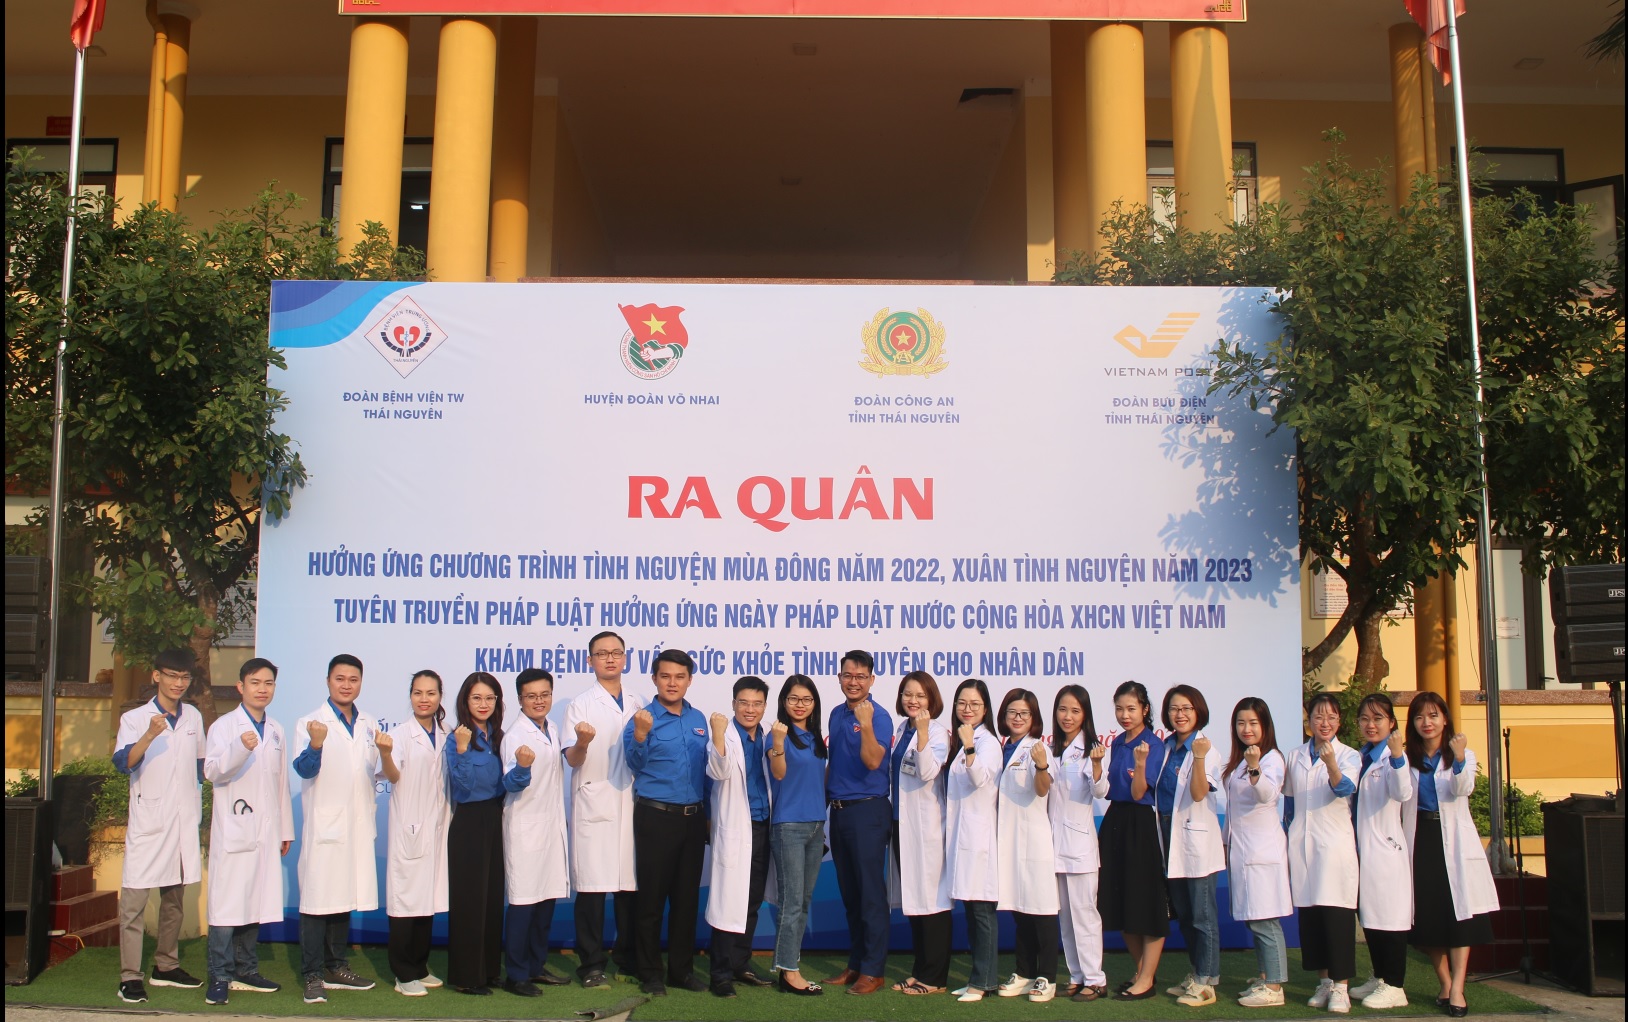 Khám bệnh, tư vấn sức khoẻ tình nguyện cho 200 người dân xã Cúc Đường, huyện Võ Nhai